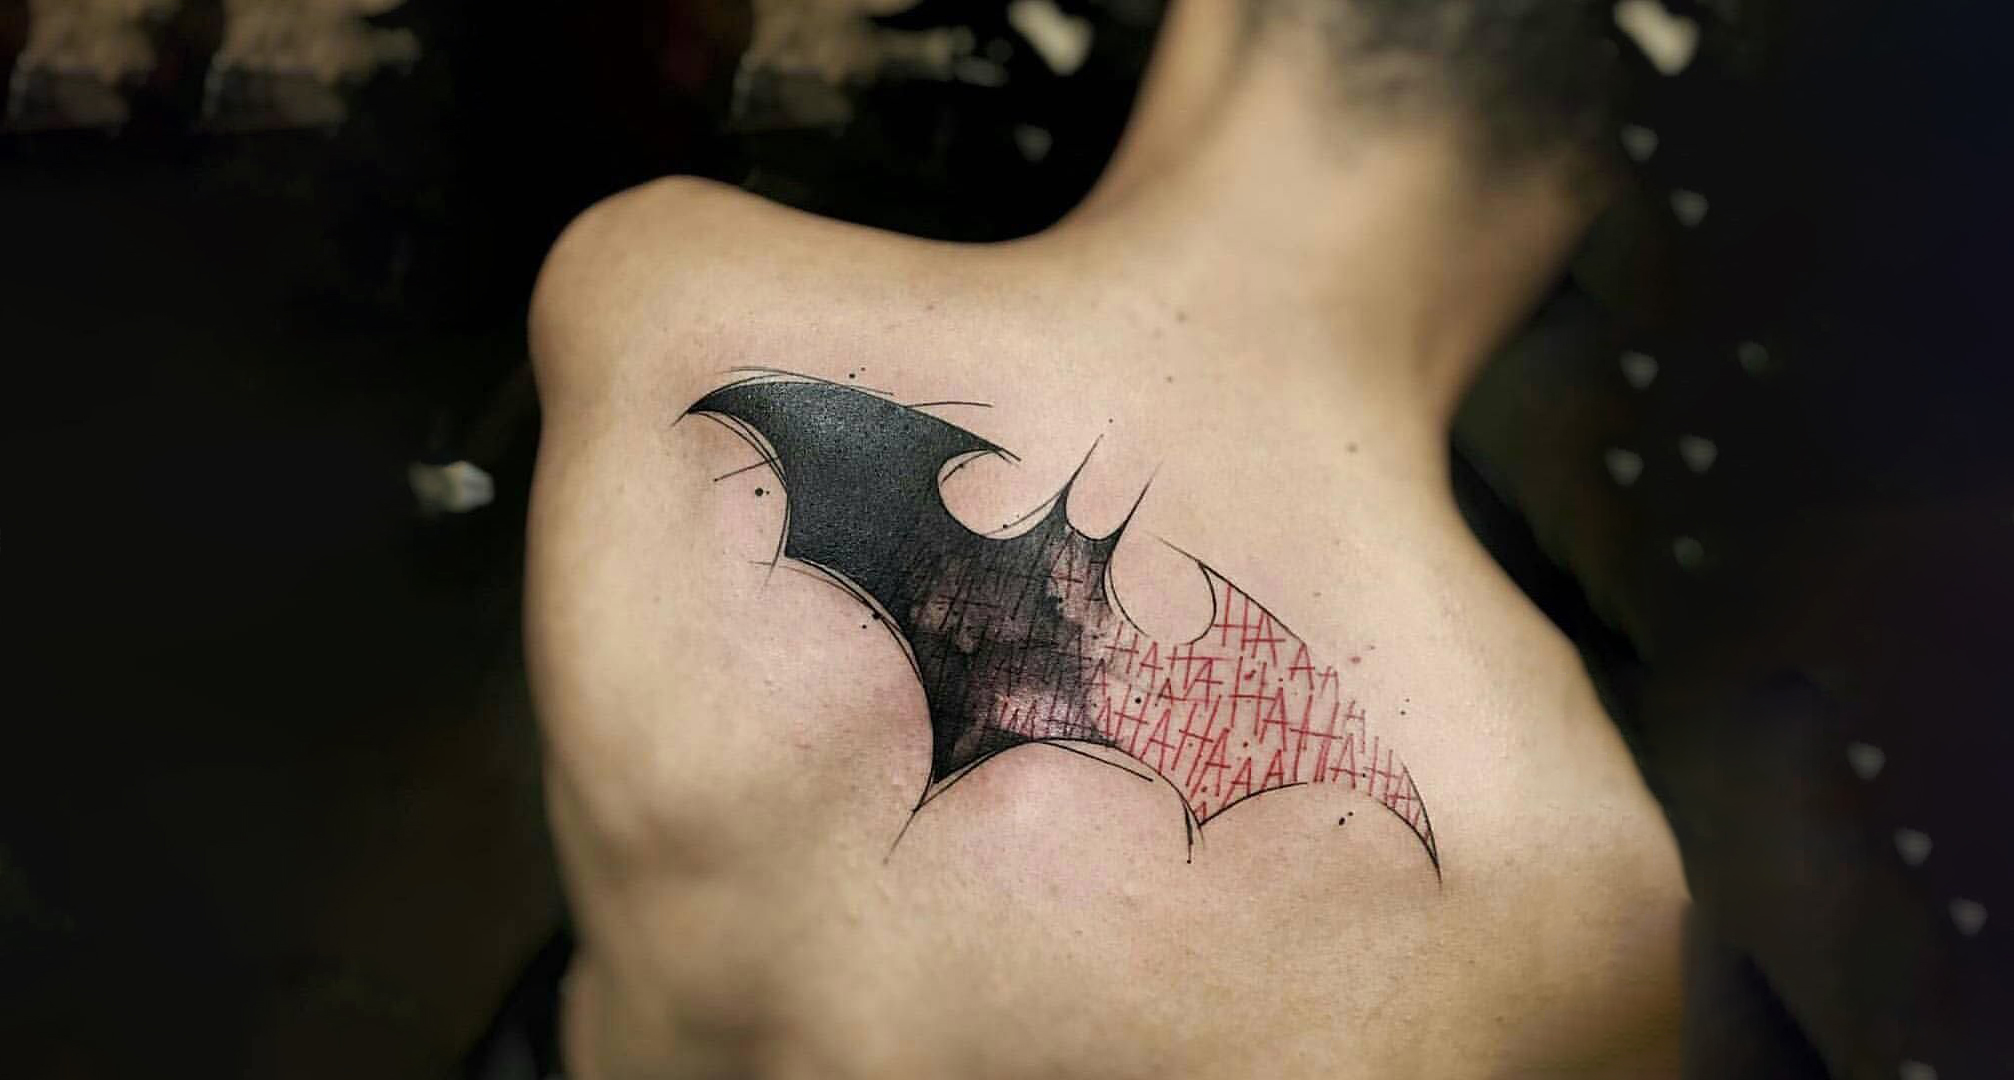  Batman tattoo on back